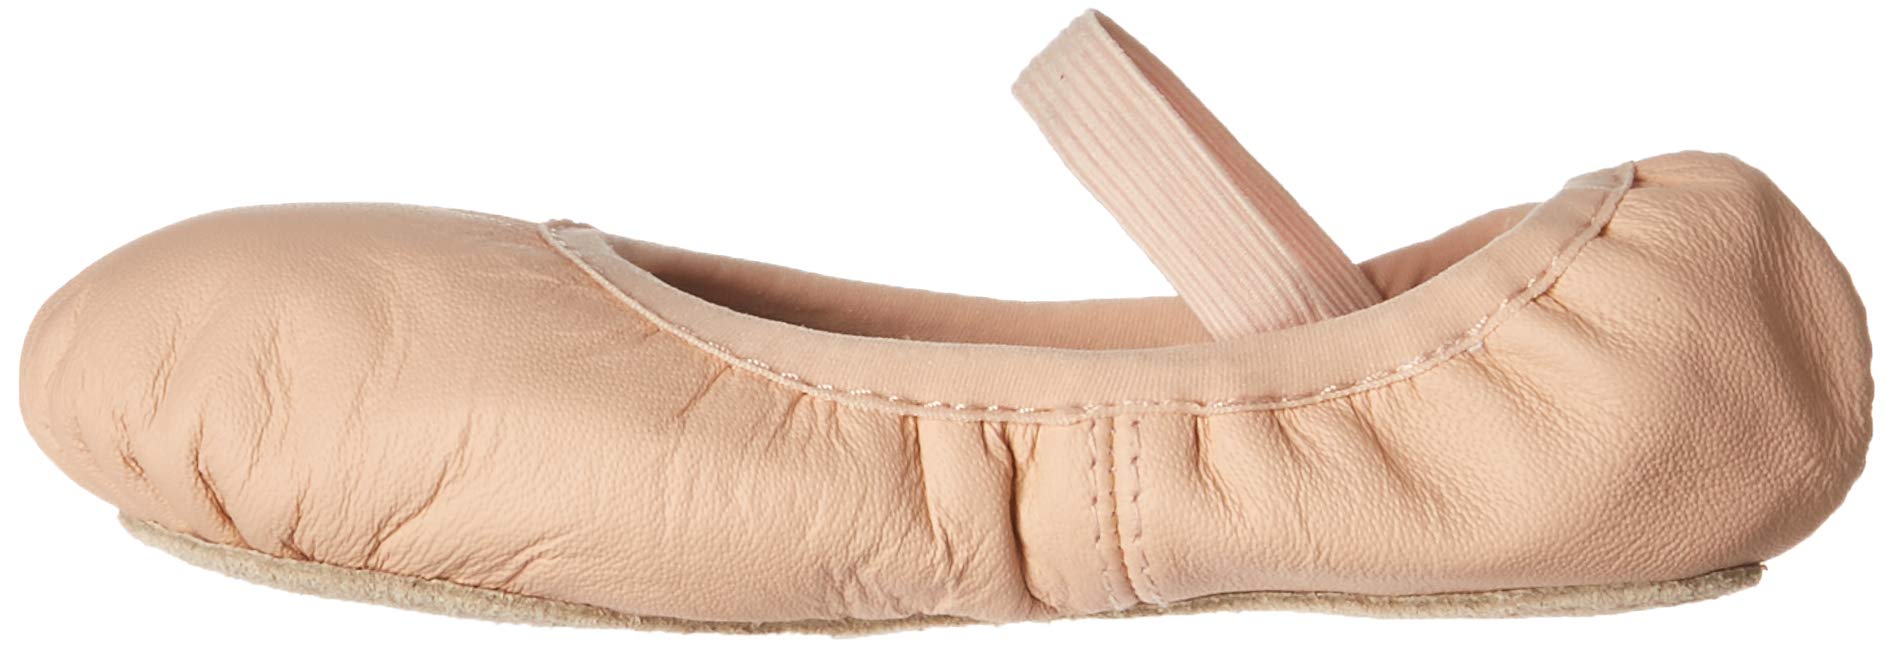 Bloch Dance Kids Belle Full Sole Leather Ballet Slipper / Shoe